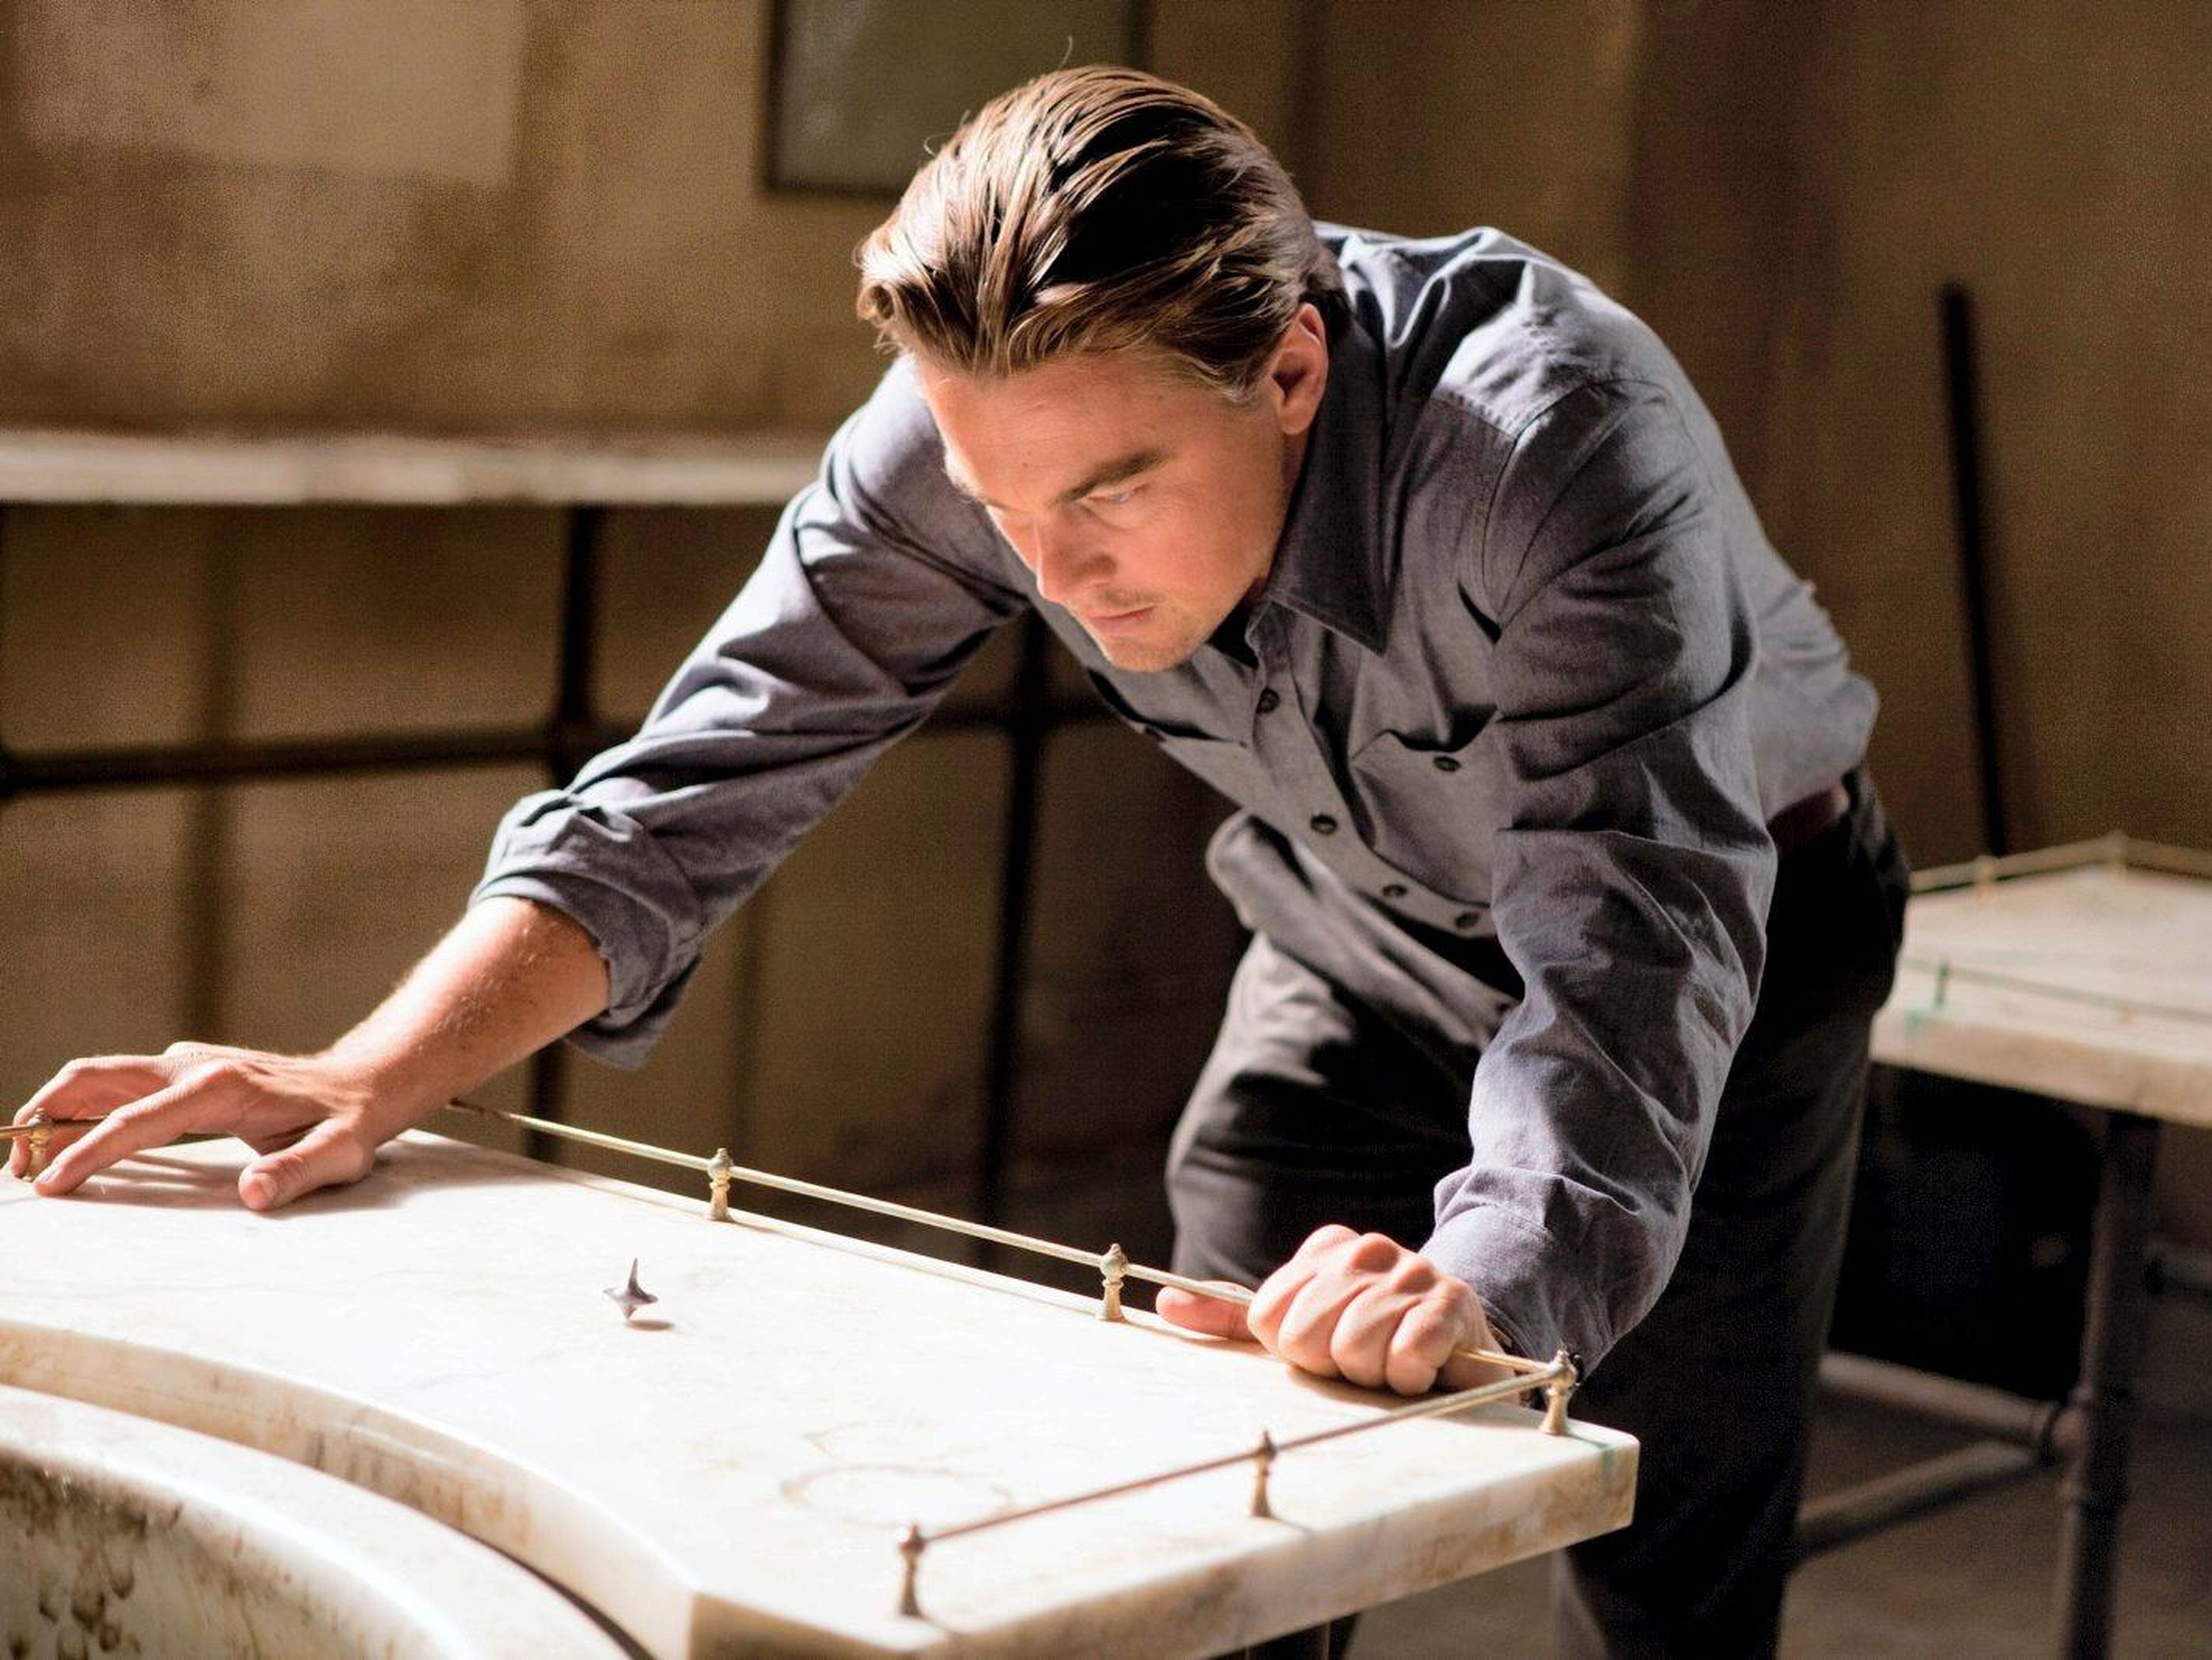 12. Leonardo DiCaprio as Dom Cobb in "Inception"